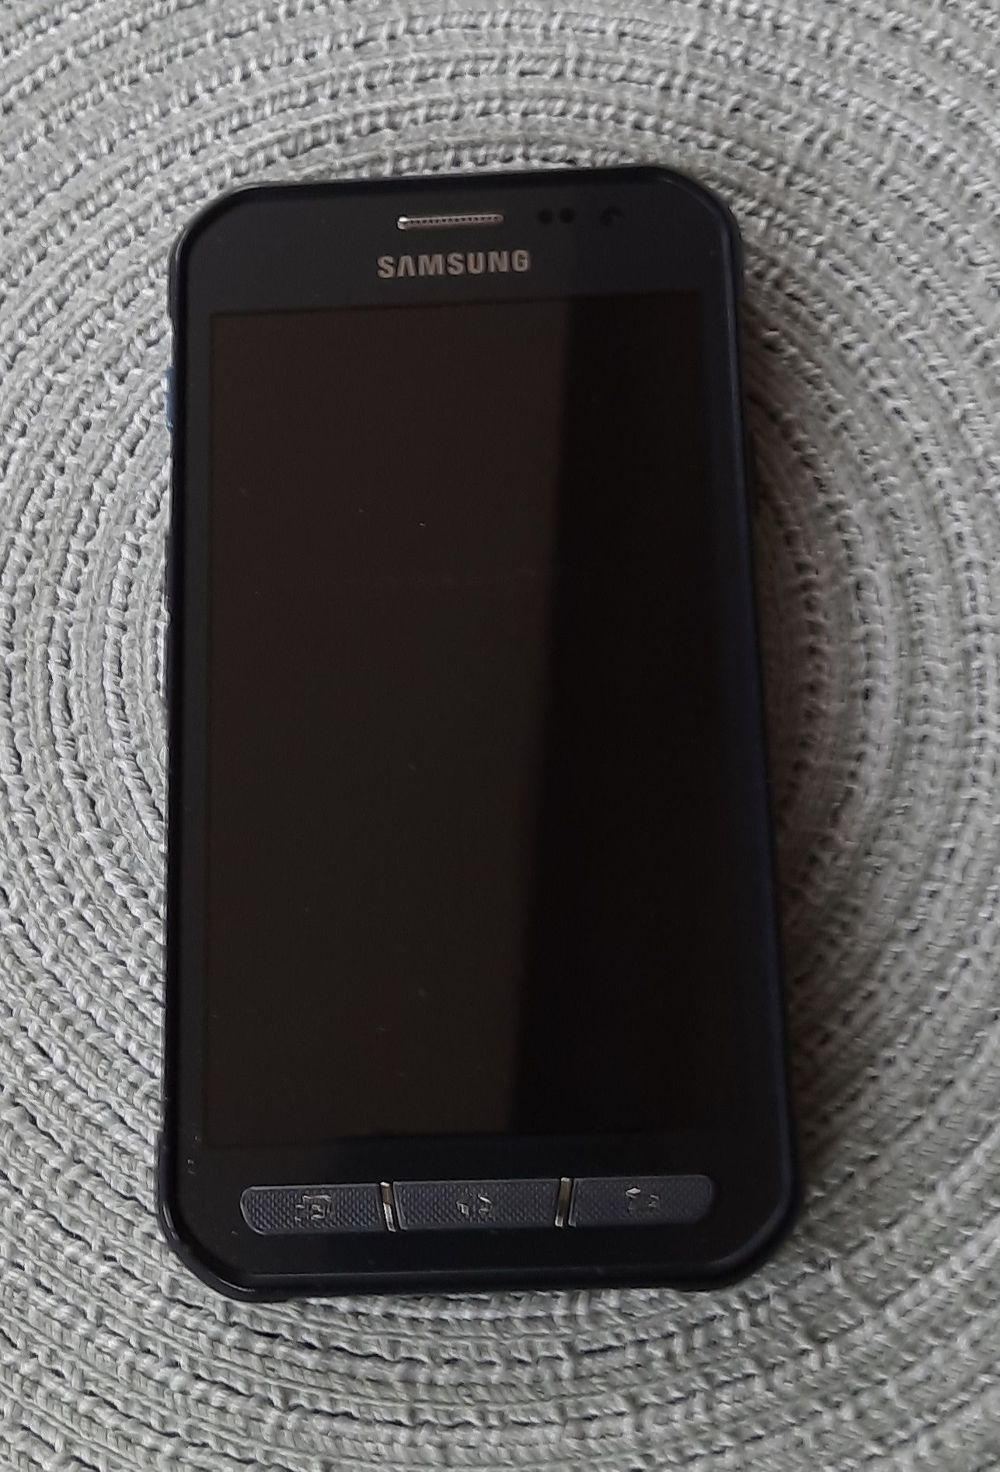 Samsung Xcover3 SM-G388F in gutem Zustand